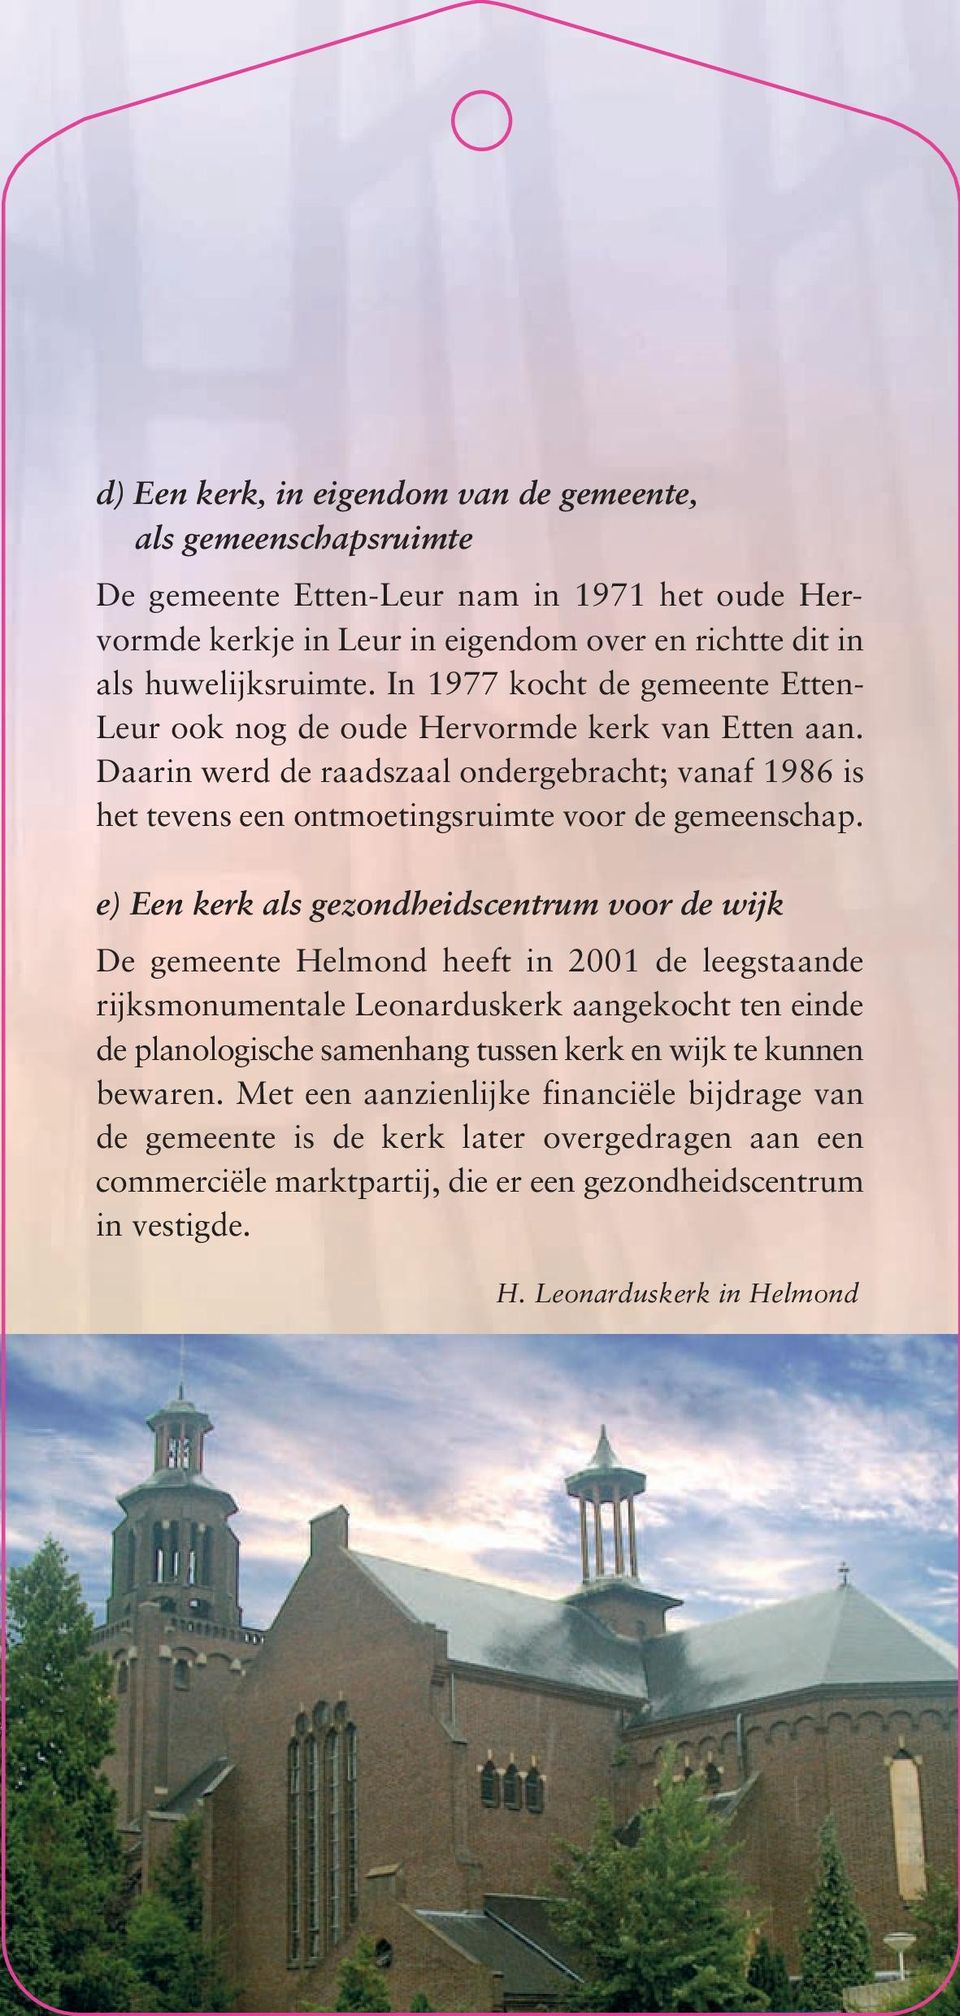 e) Een kerk als gezondheidscentrum voor de wijk De gemeente Helmond heeft in 2001 de leegstaande rijksmonumentale Leonarduskerk aangekocht ten einde de planologische samenhang tussen kerk en wijk